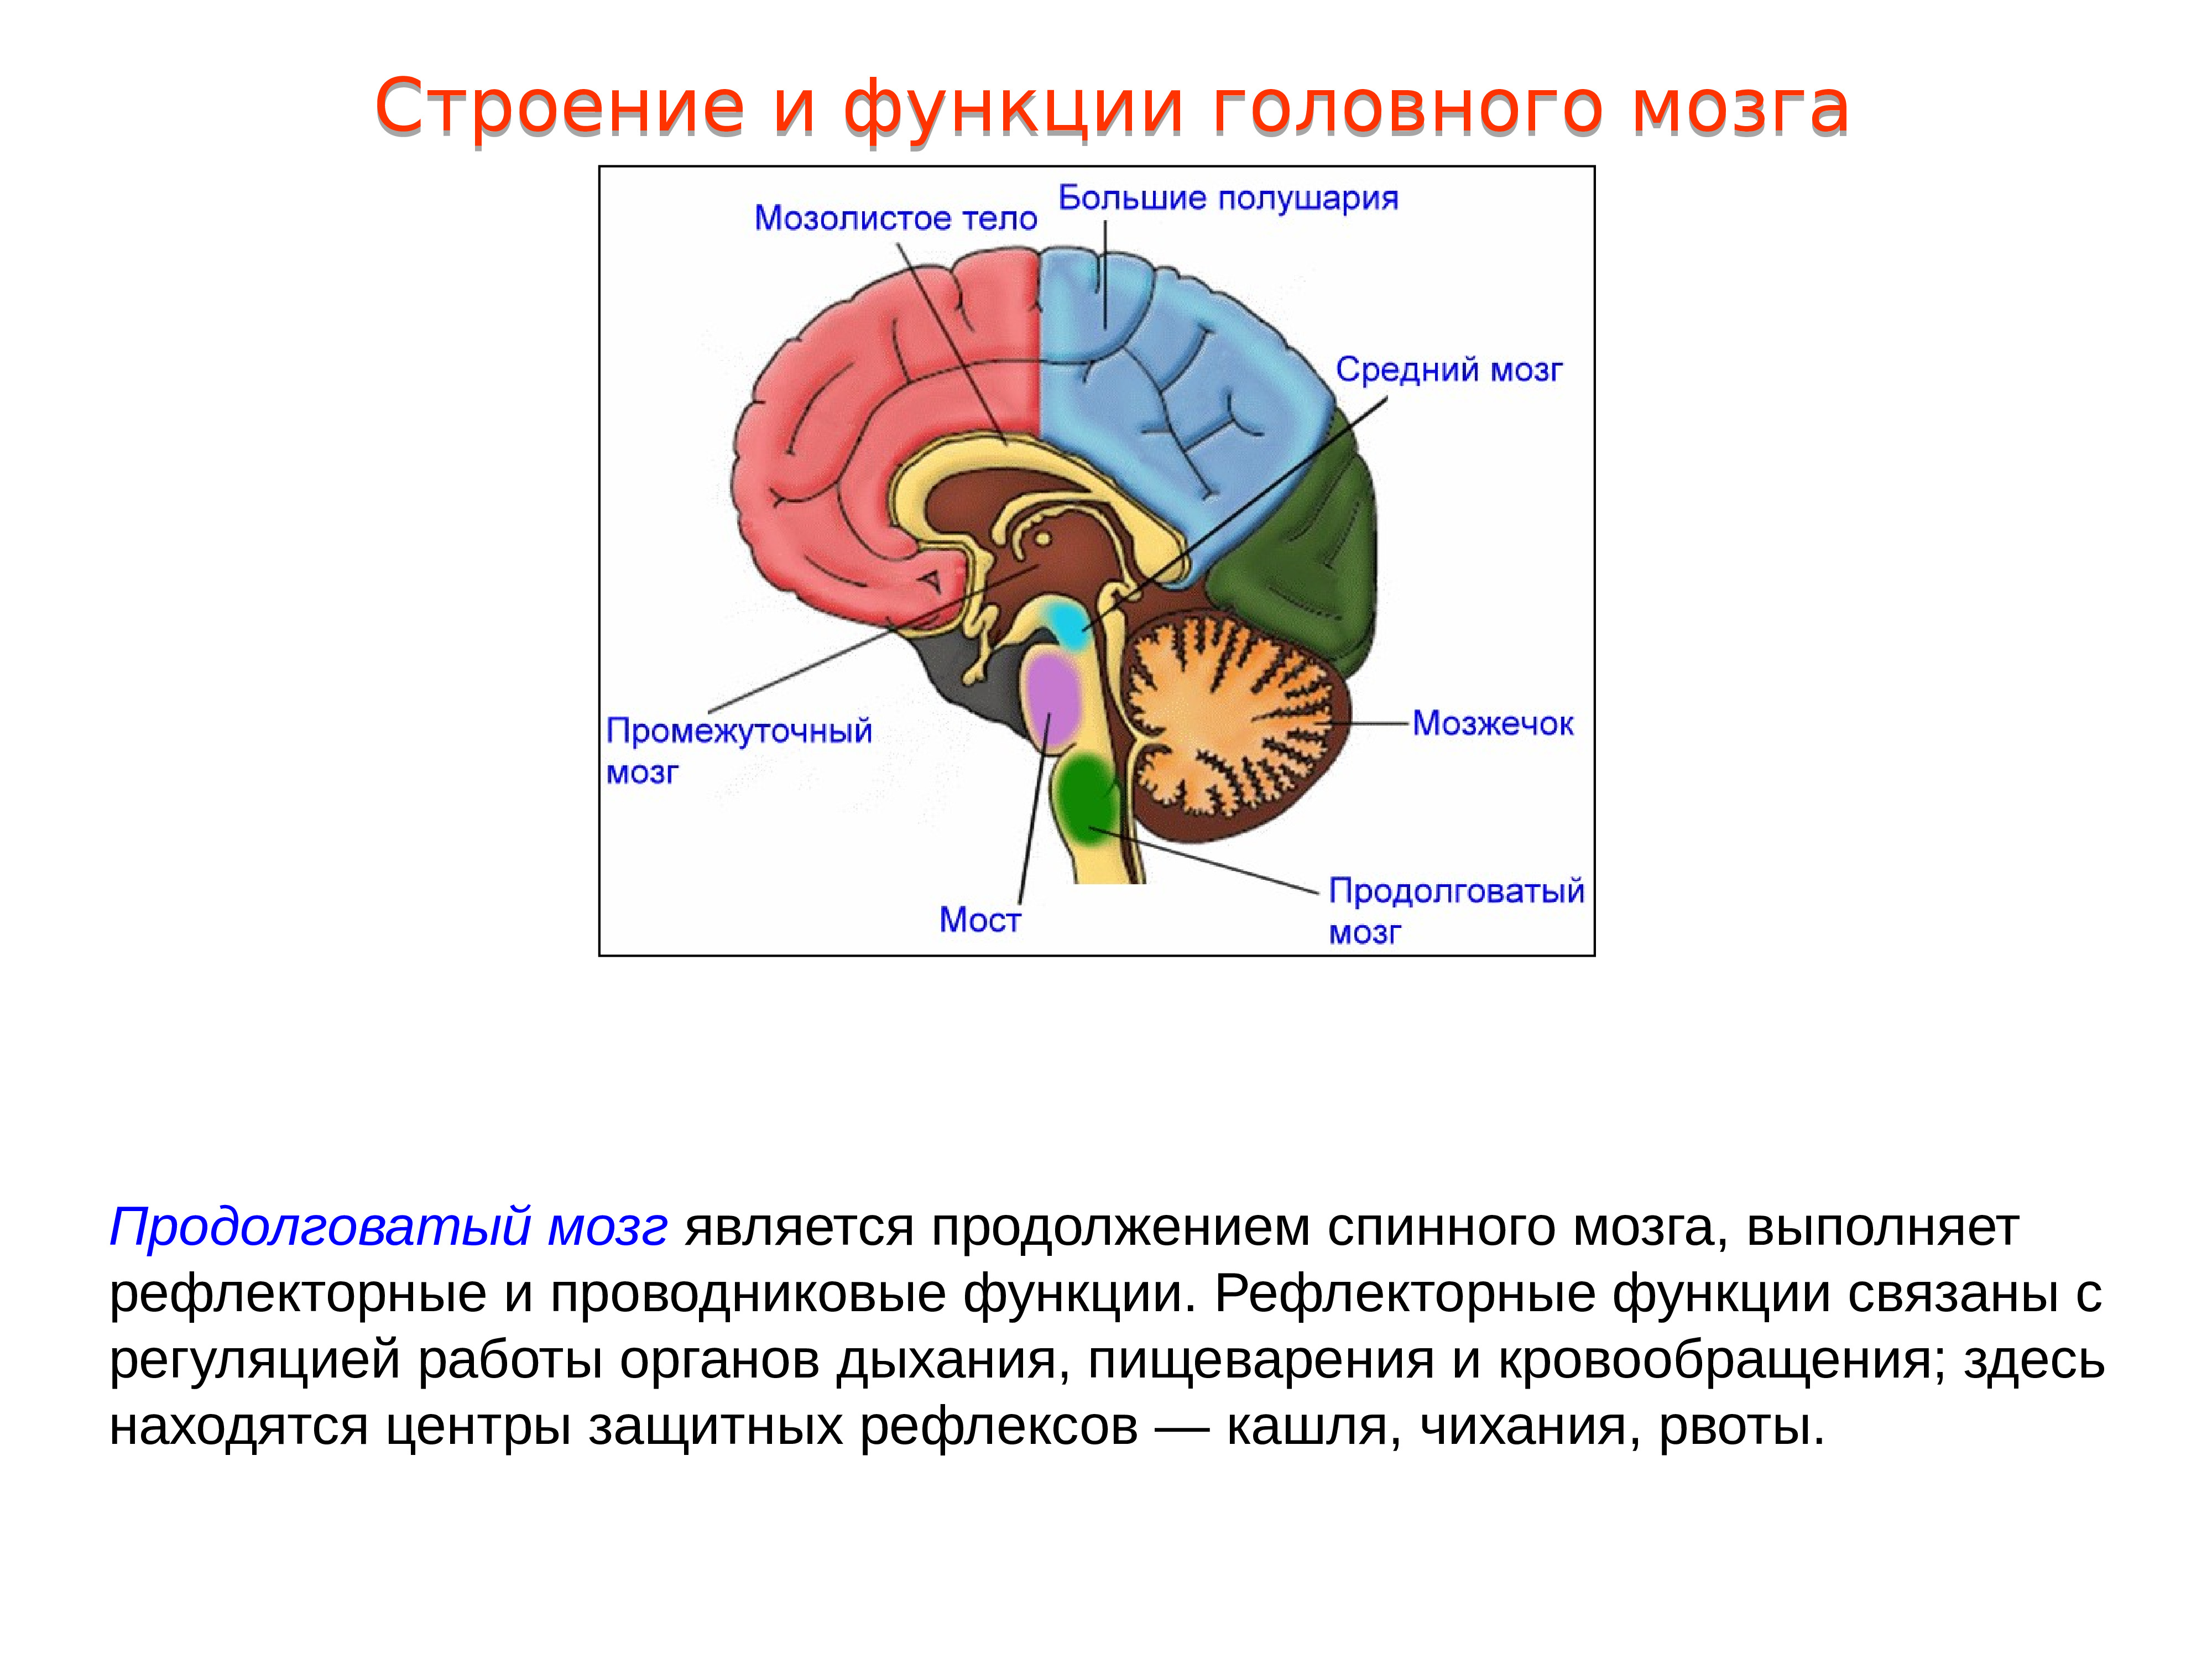 Функции моста и среднего мозга. Структура головного мозг задний мозг. Проводниковая функция мозжечка. Головной мозг, отделы. Строение и функции продолговатого мозга. 1. Промежуточный мозг: строение, функции.